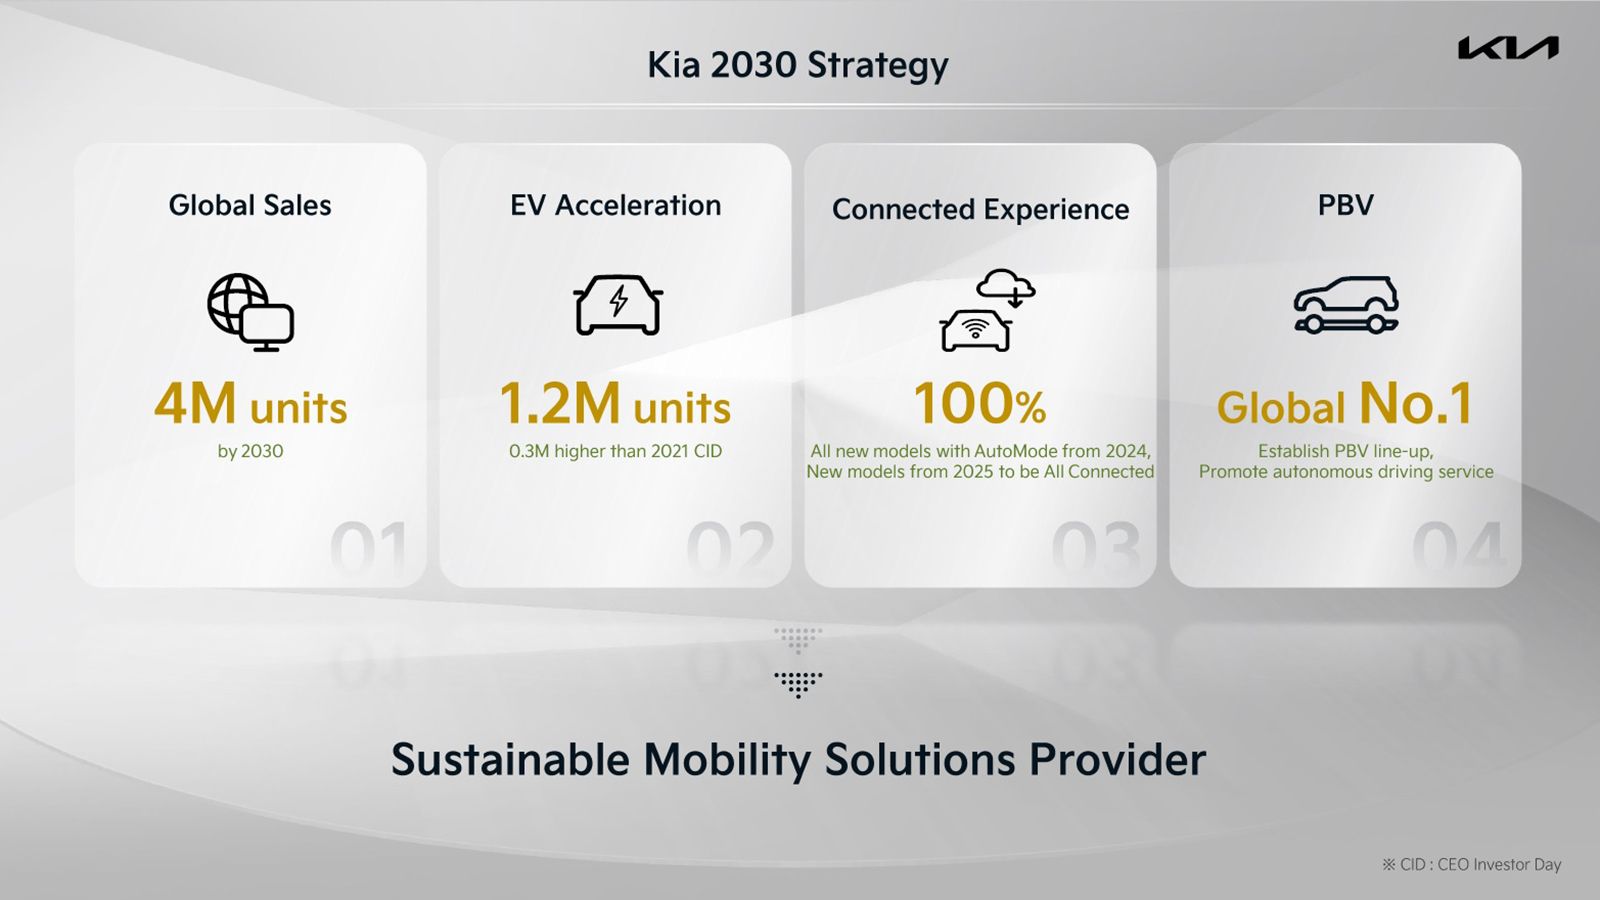 Συνολικές πωλήσεις 4 εκ. οχημάτων φιλοδοξεί να εμφανίζει το 2030 η Kia, από τις οποίες οι 1,2 εκ. θα αφορούν σε ηλεκτρικά οχήματα.